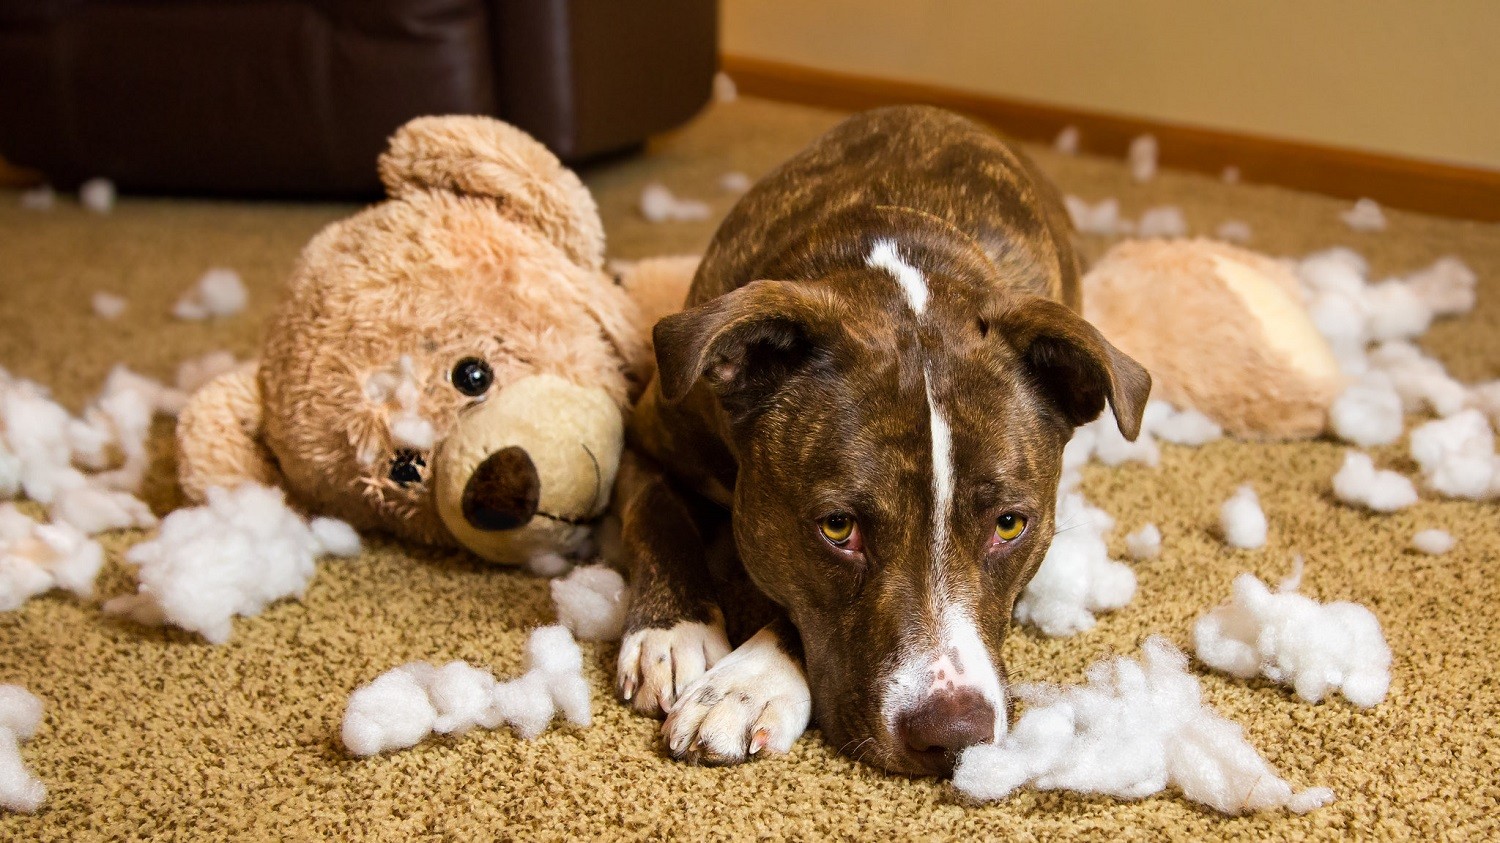 Em cães adultos, o comportamento de destruir os móveis e objetos muitas vezes está ligado ao tédio (Foto: Flickr / Sheila Sund / CreativeCommons)